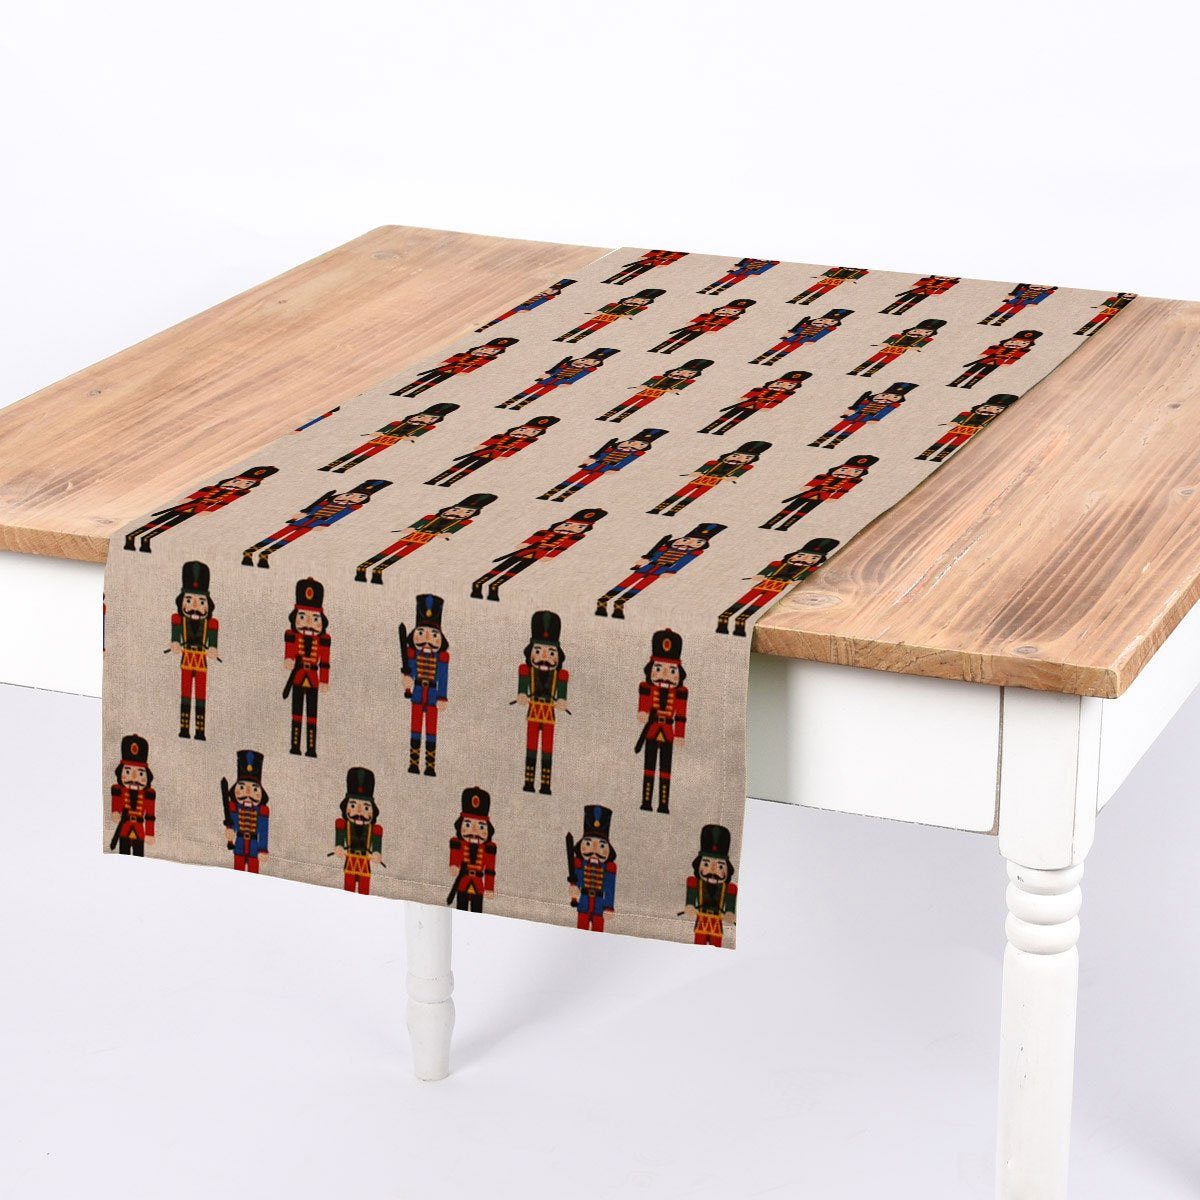 SCHÖNER LEBEN. Tischläufer SCHÖNER LEBEN. Tischläufer Nussknacker natur rot blau grün 40x160cm, handmade